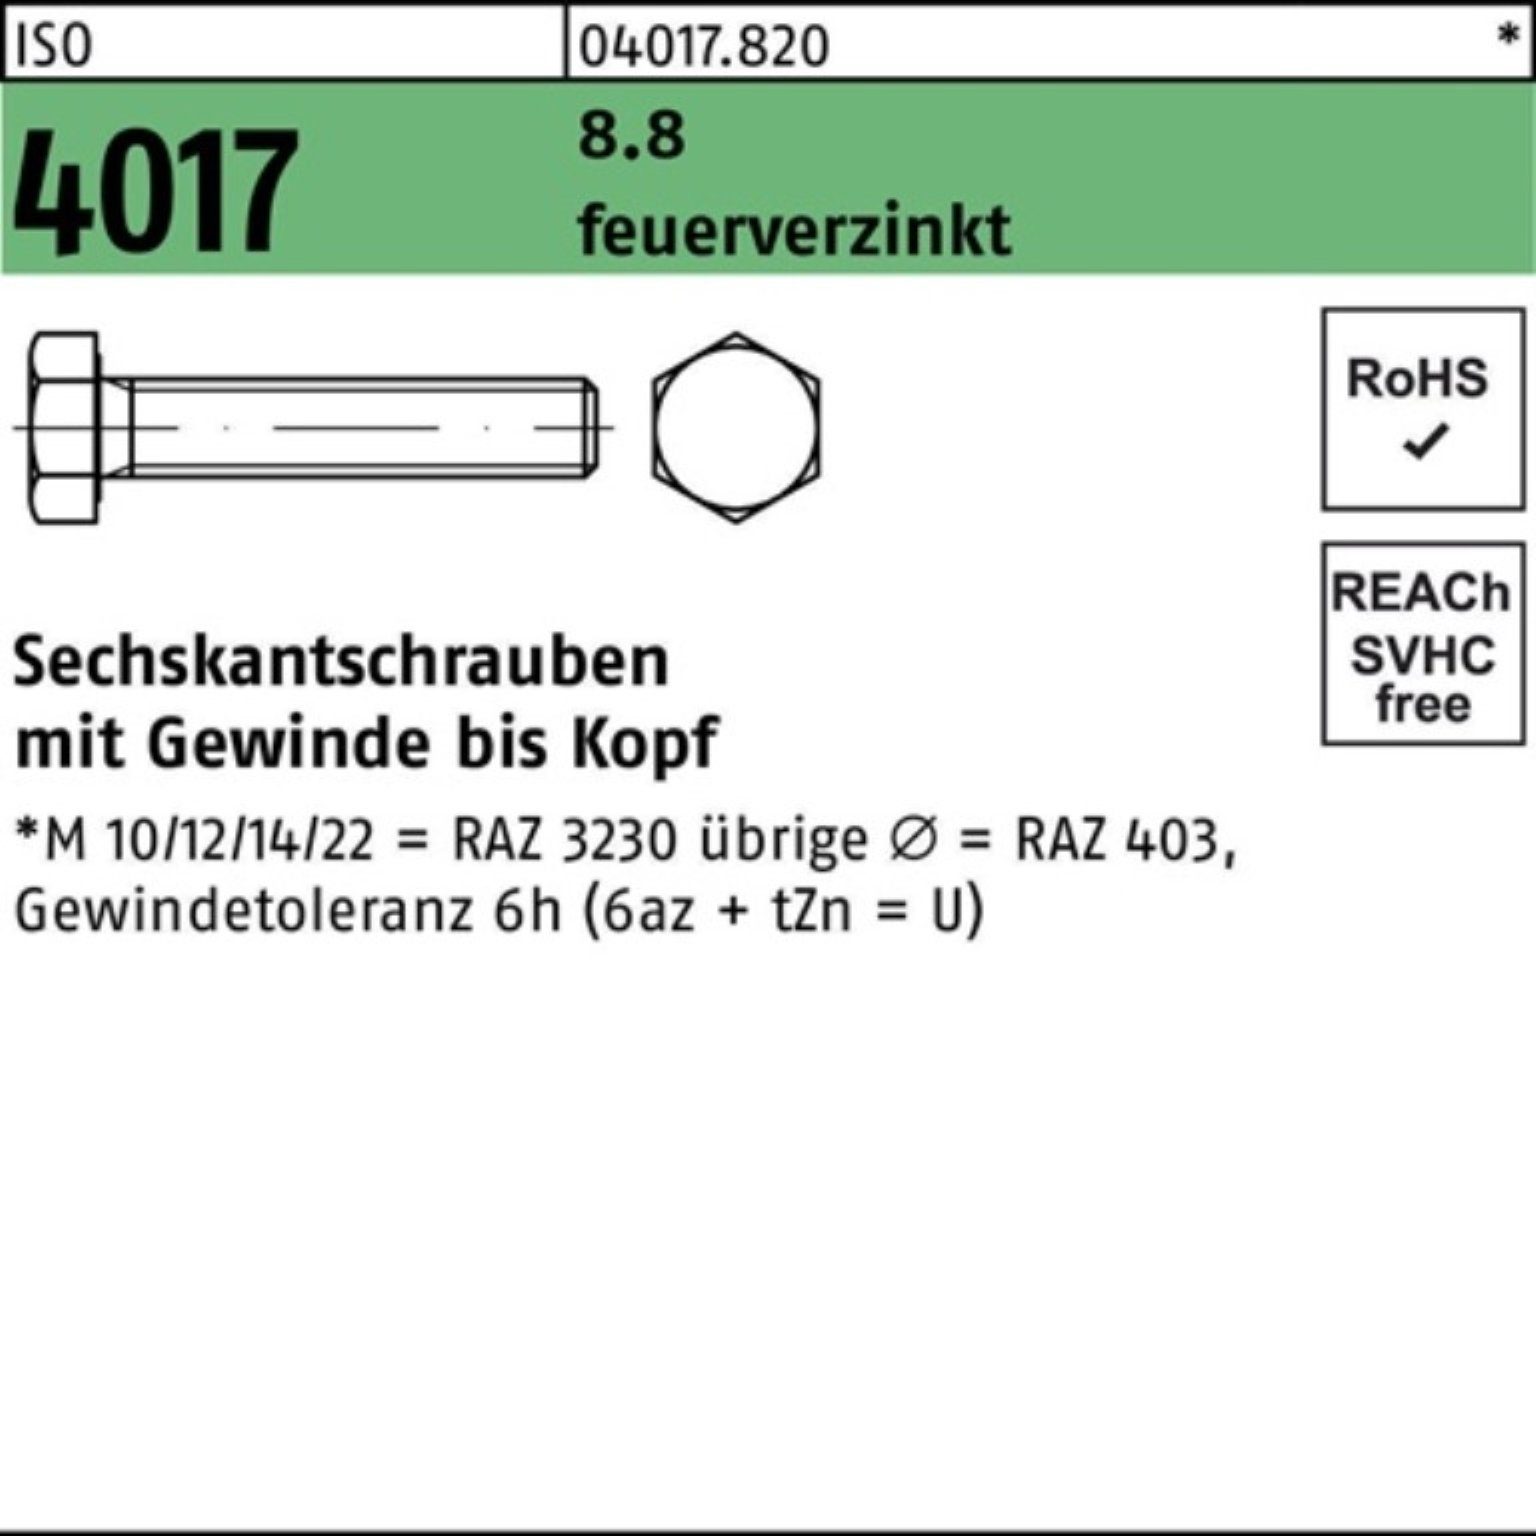 M24x Sechskantschraube Pack St 100er Bufab 25 8.8 ISO 4017 feuerverz. 50 VG Sechskantschraube